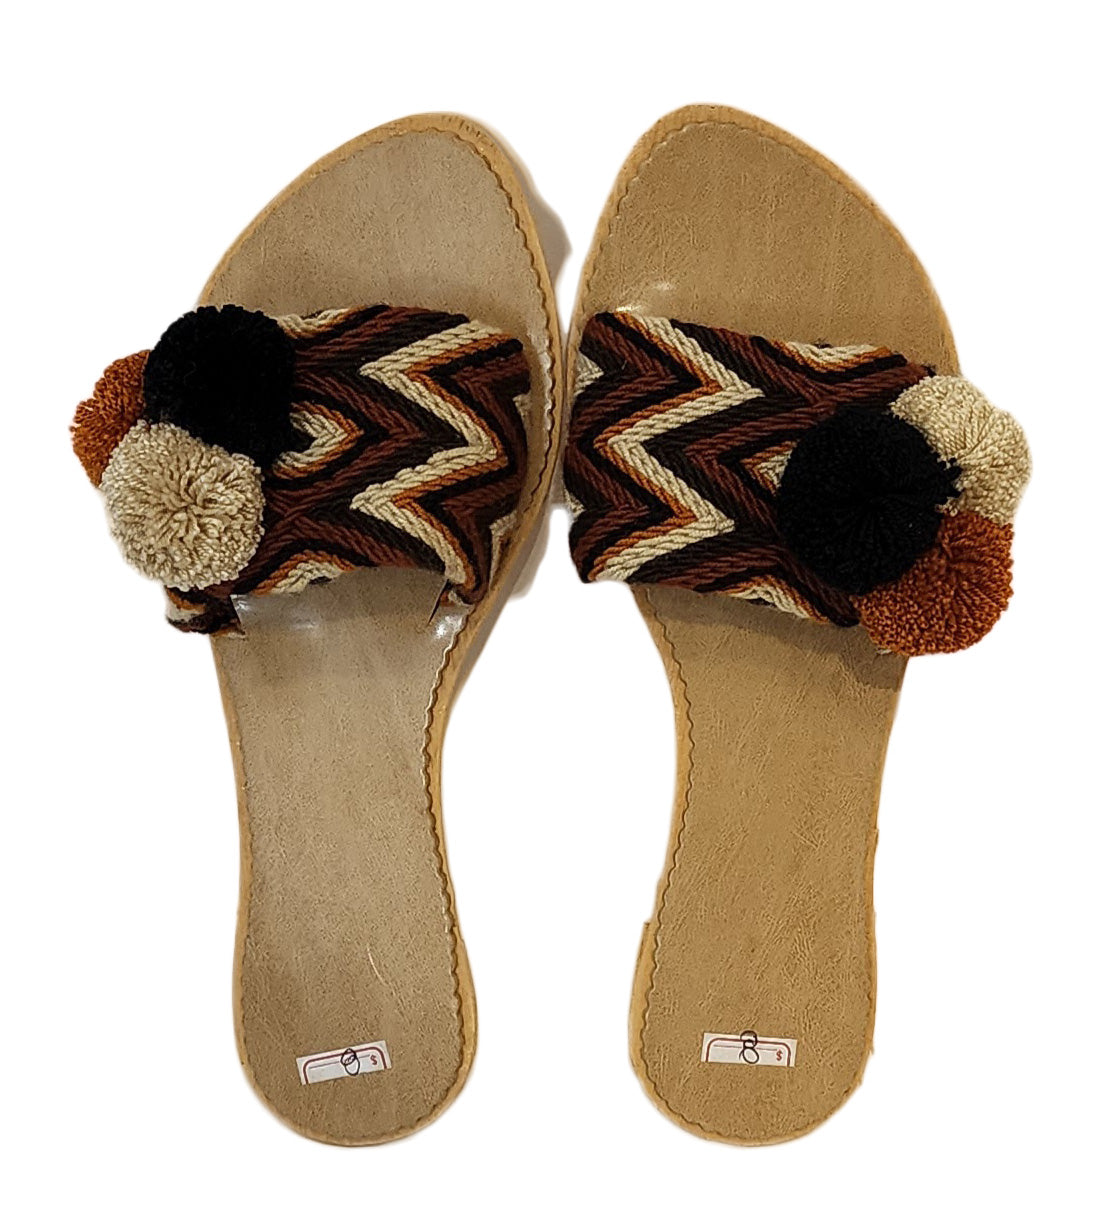 1 Esperanza Wayuu Sandal (Size 8.5) - Wuitusu